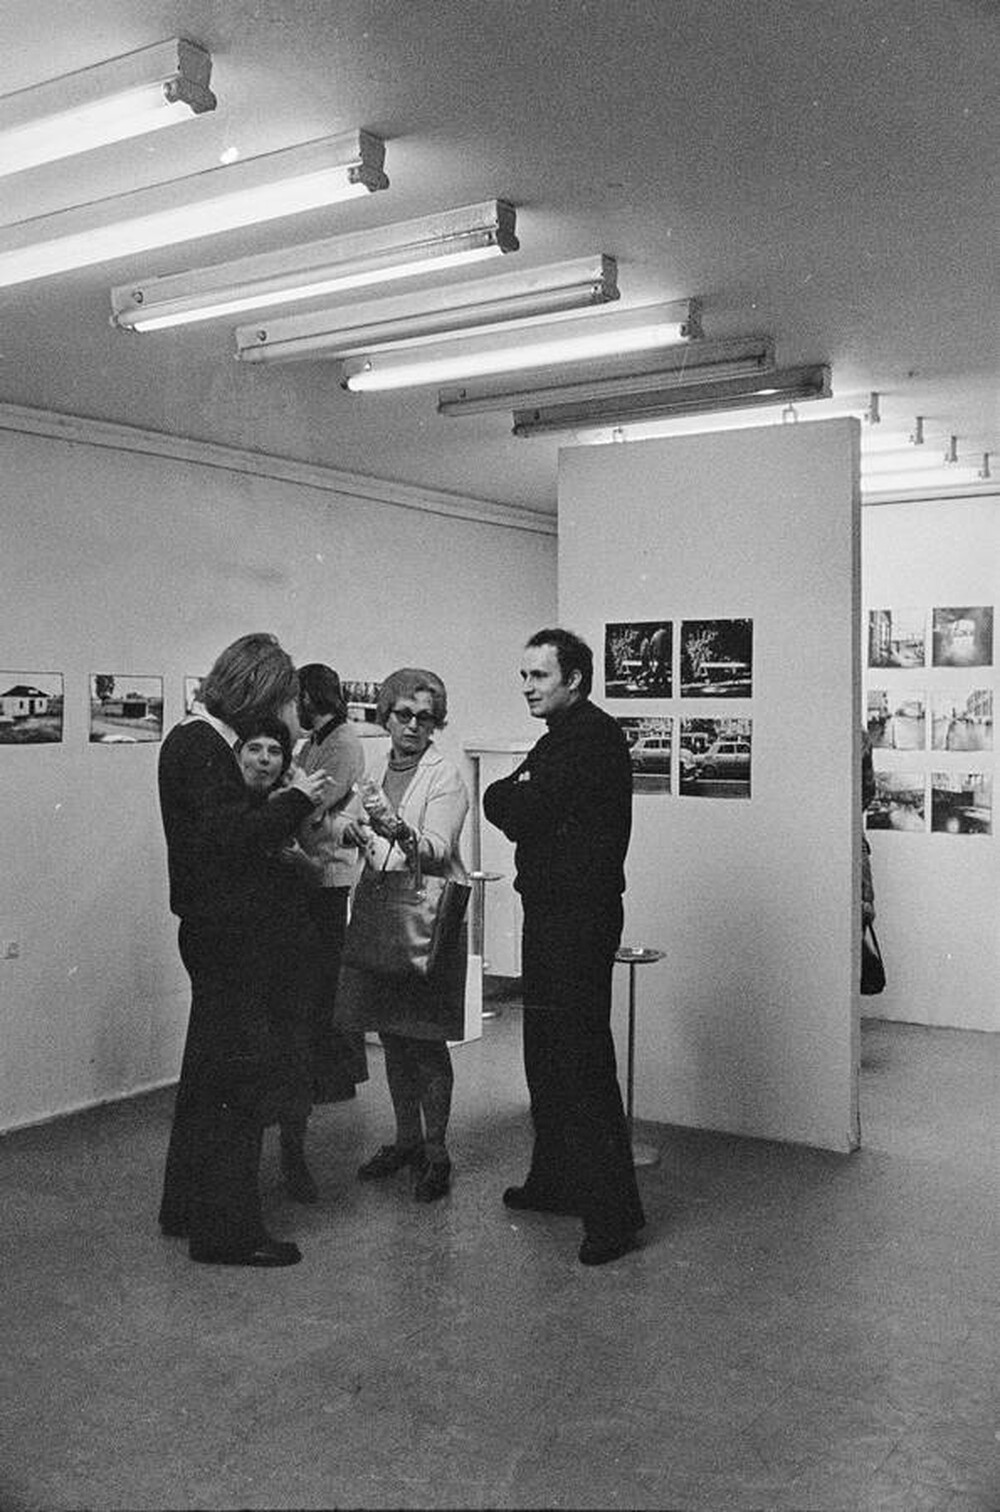 Zygmunt Rytka, "Time Units", Remont Gallery, Warsaw, 1974